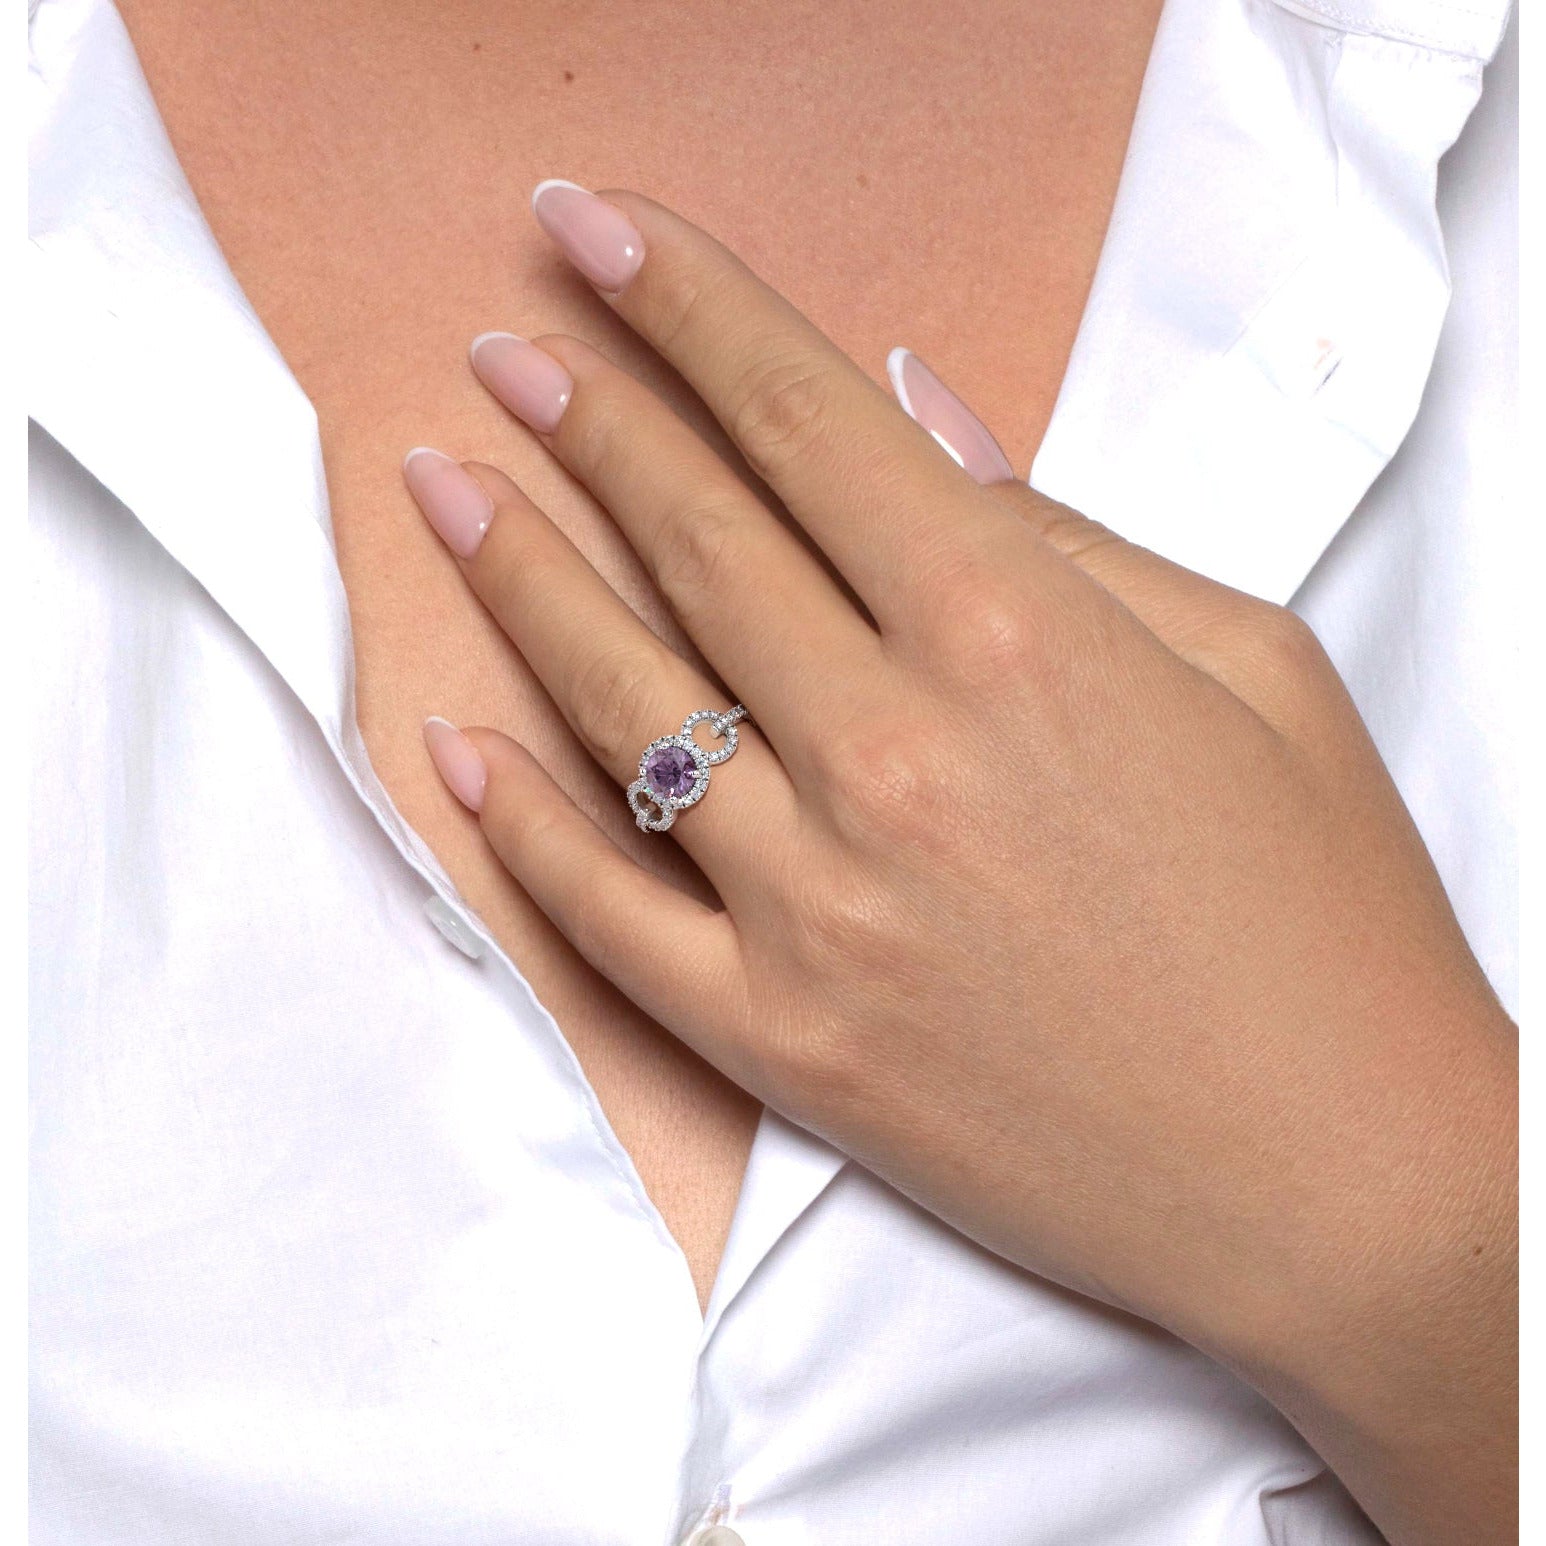 Elize Gemstone & Diamonds Ring   (1.30 Carat) -Platinum